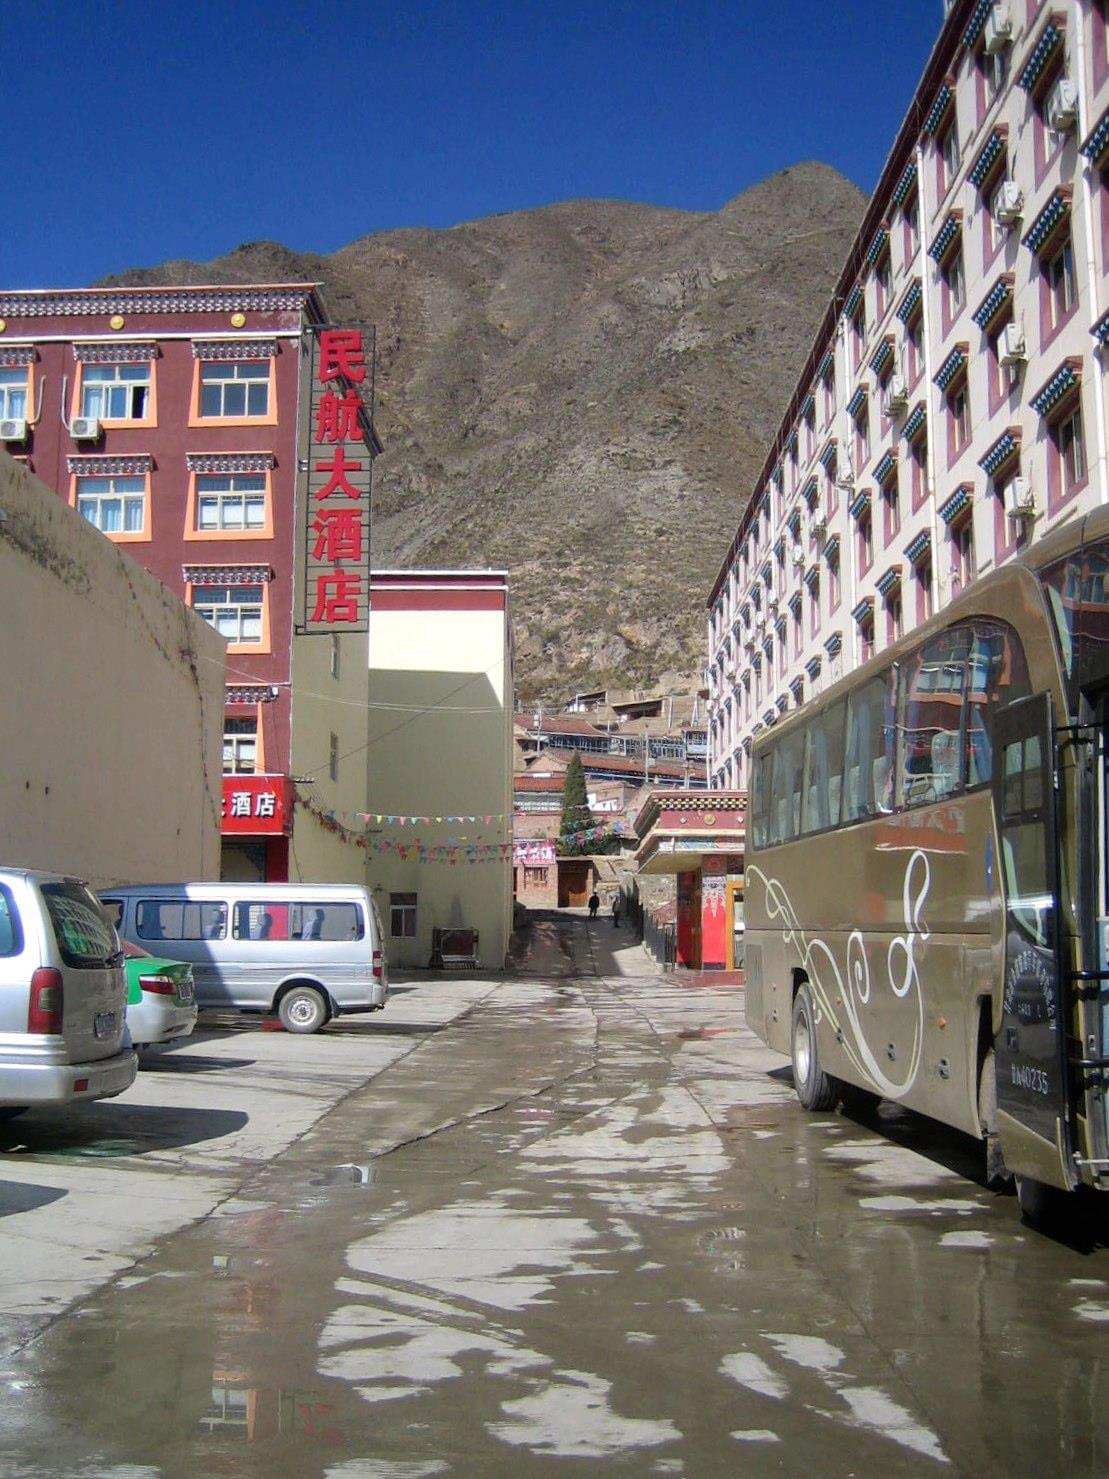 Part 5: The Trek to Tibet